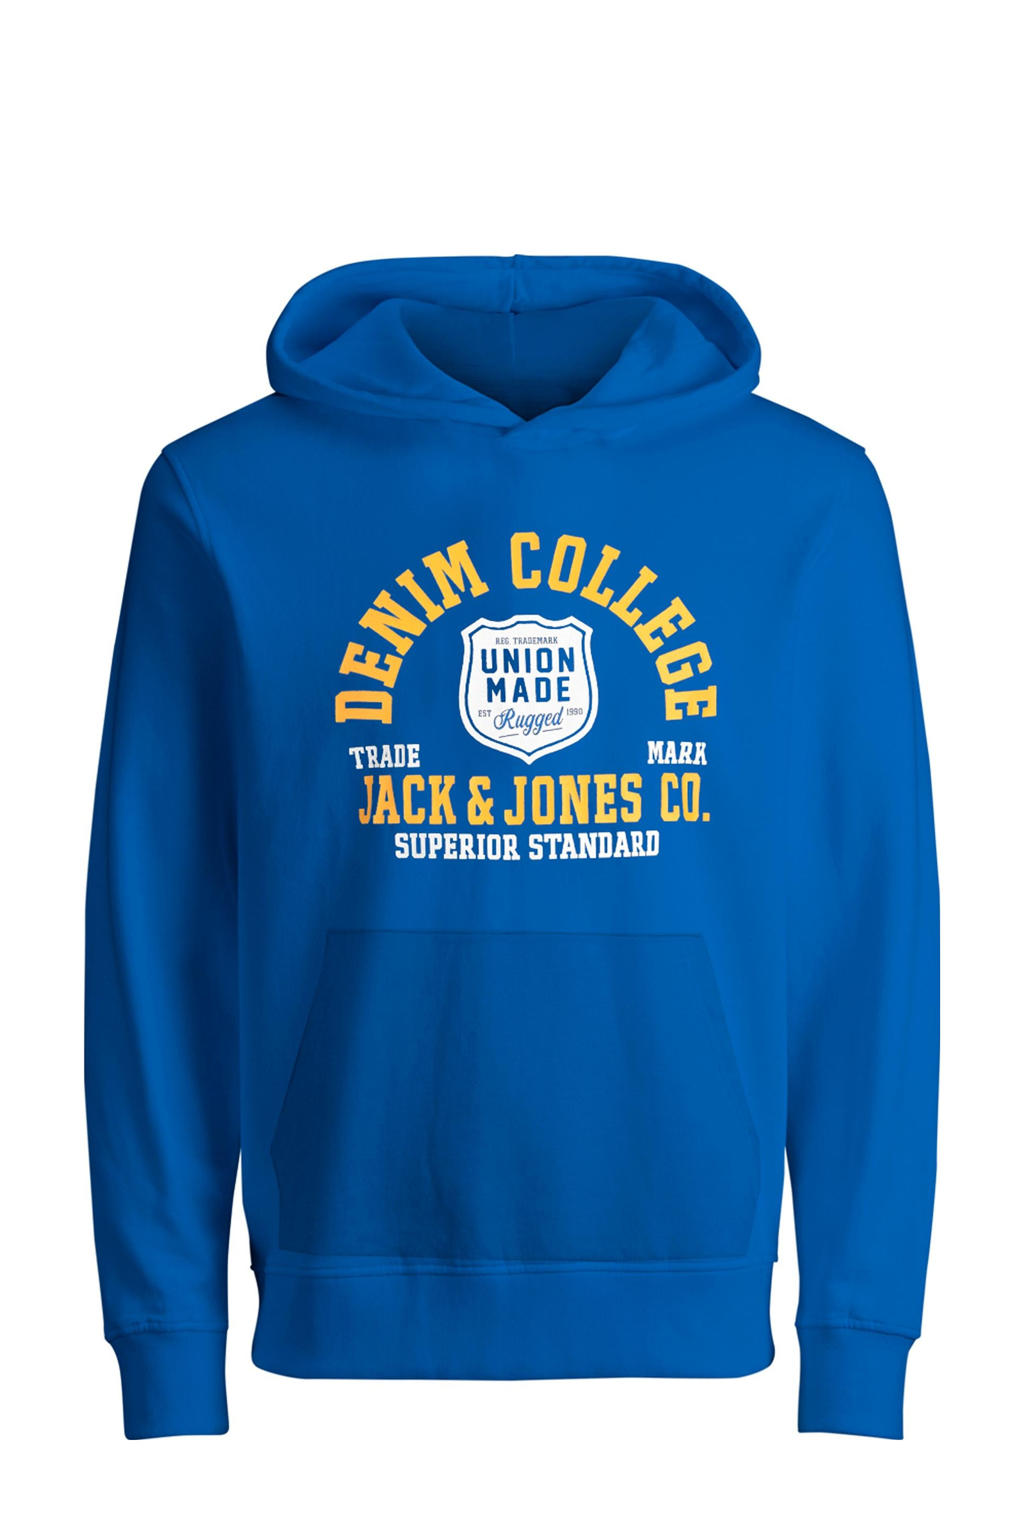 Blauwe jongens JACK & JONES JUNIOR hoodie van sweat materiaal met logo dessin, lange mouwen en capuchon